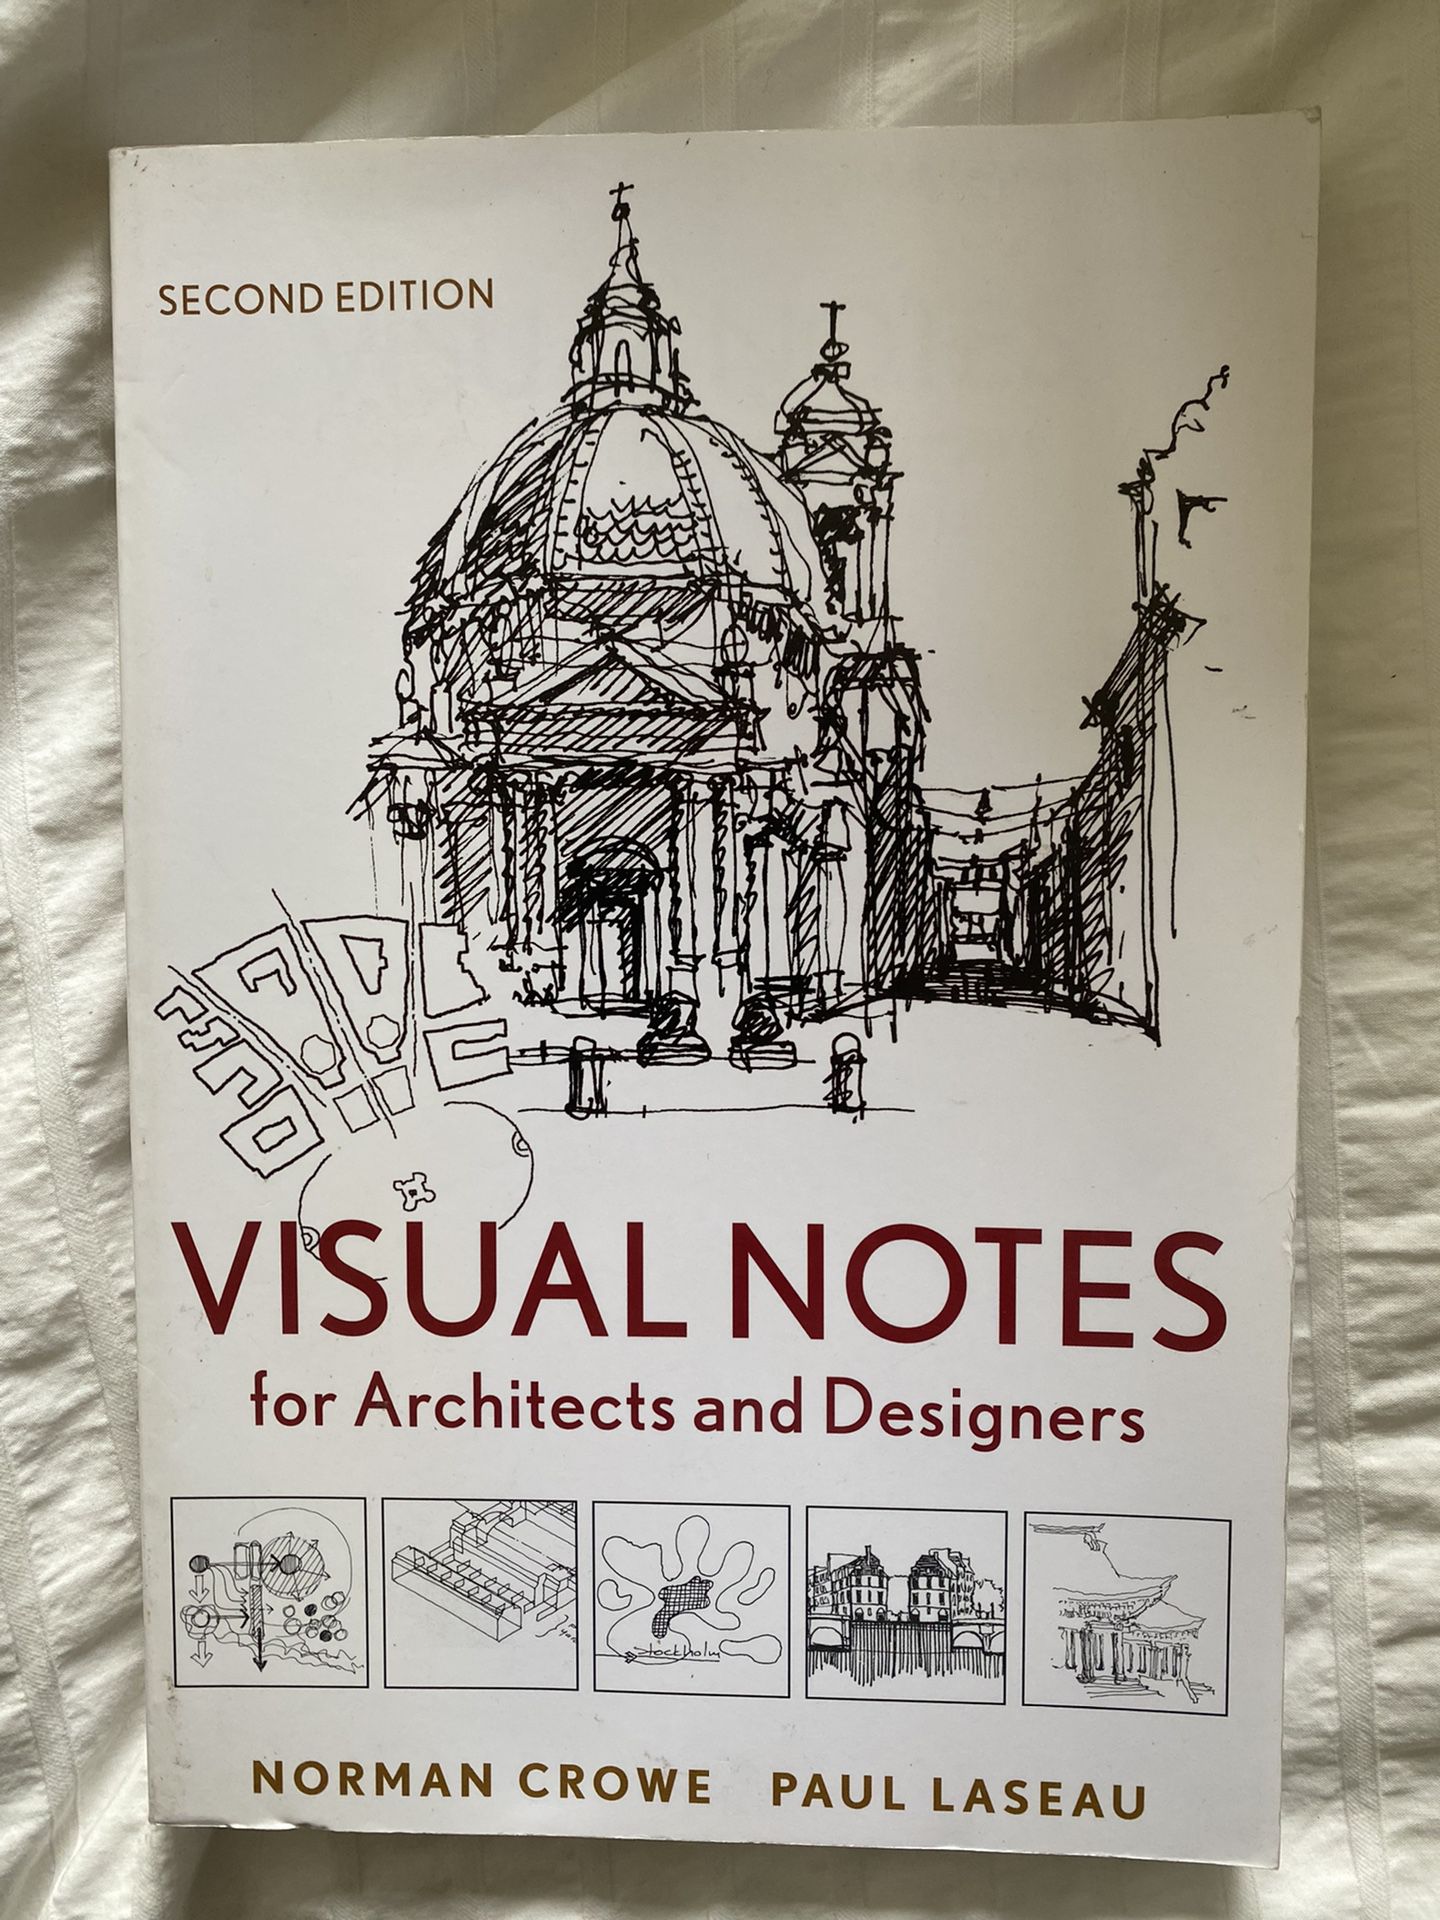 Architecture & Architecture History Books